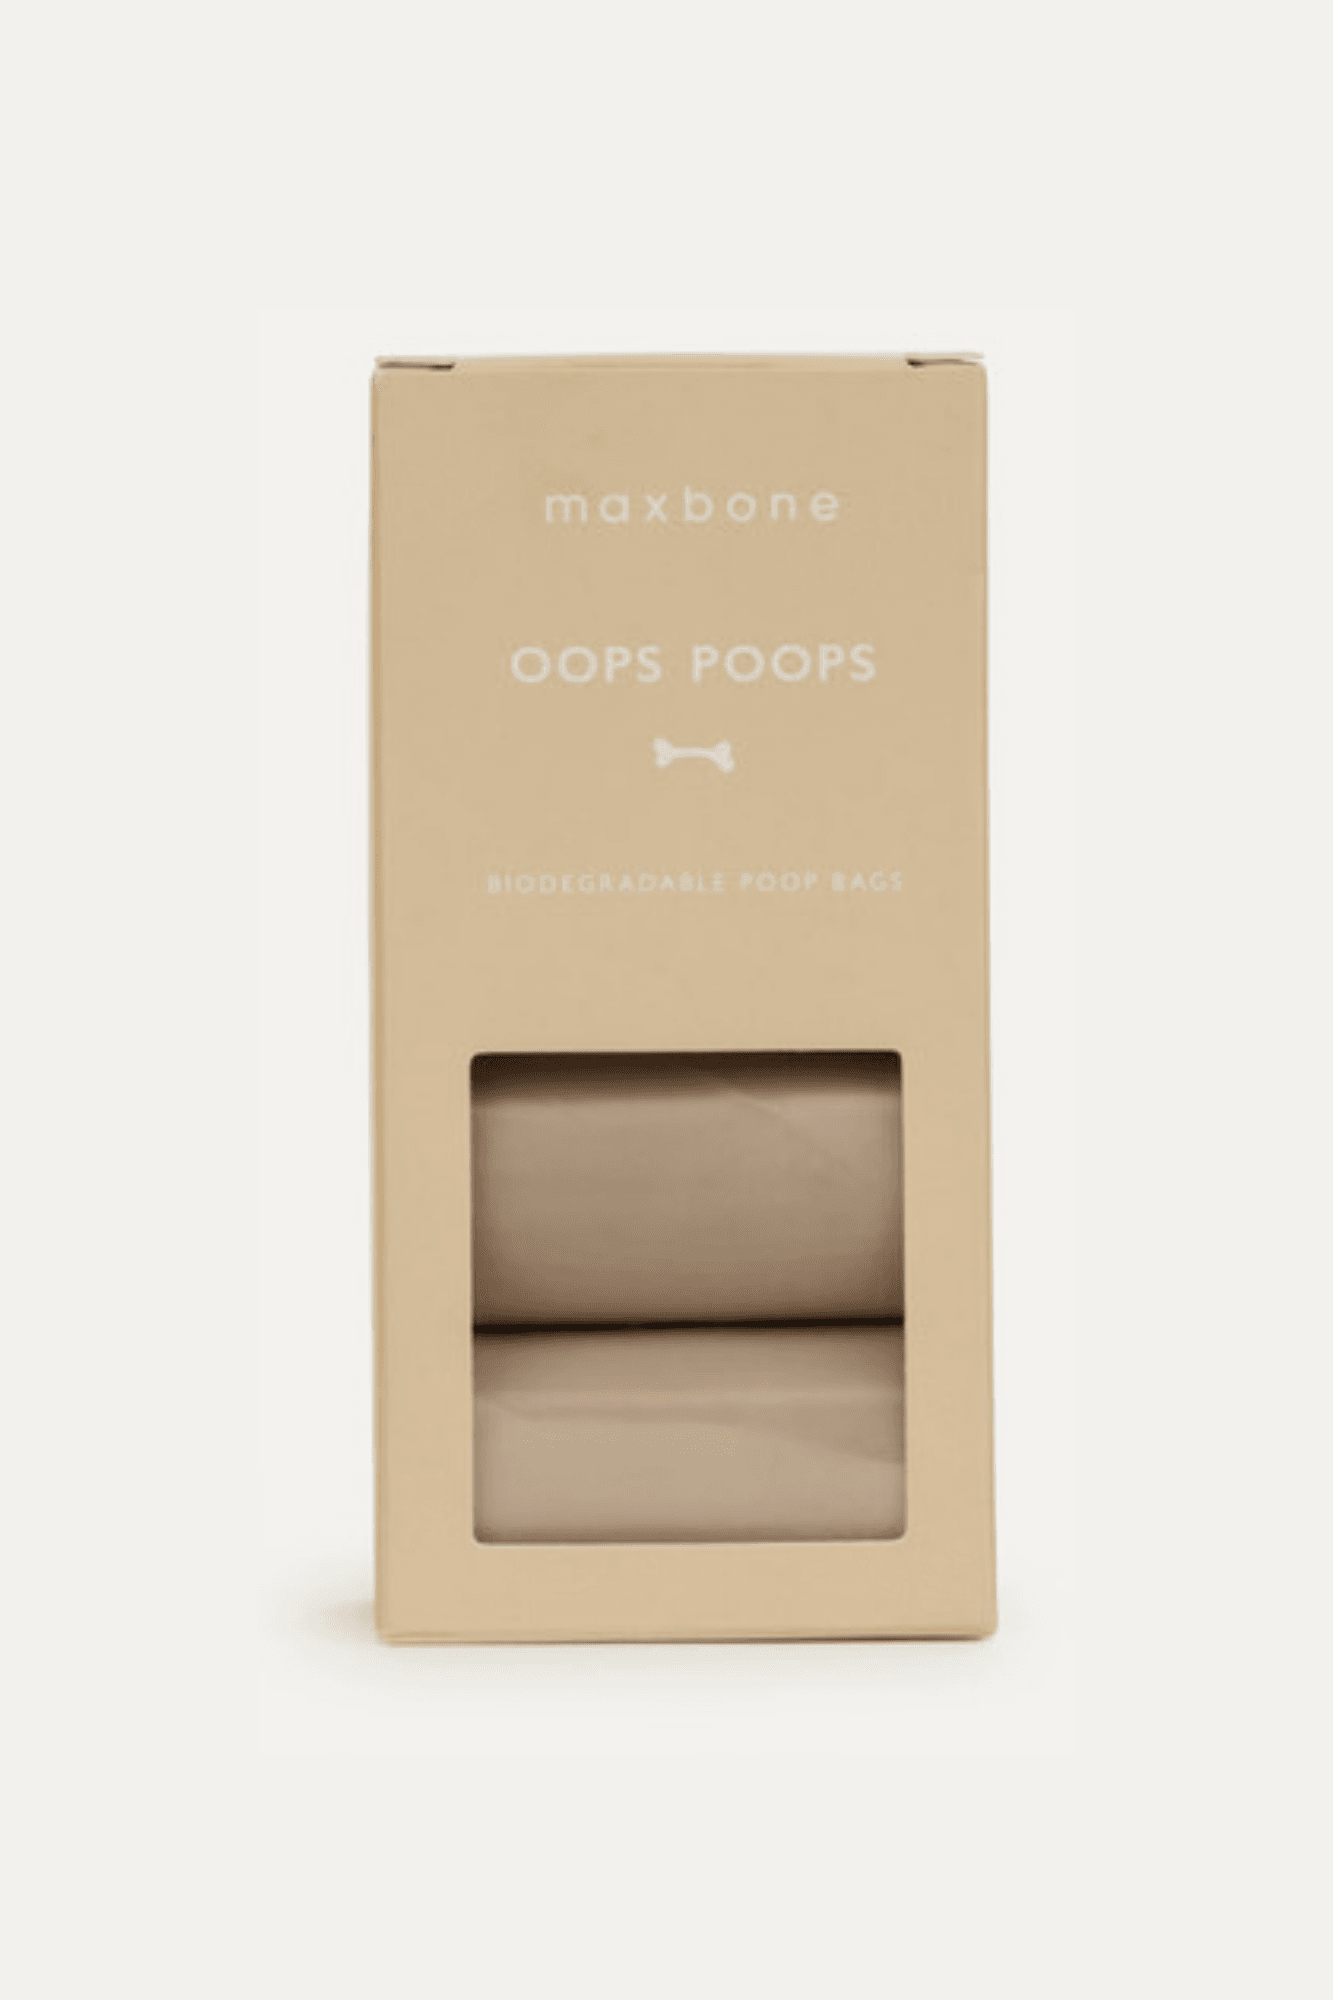 Oops Poops Bags - maxbone